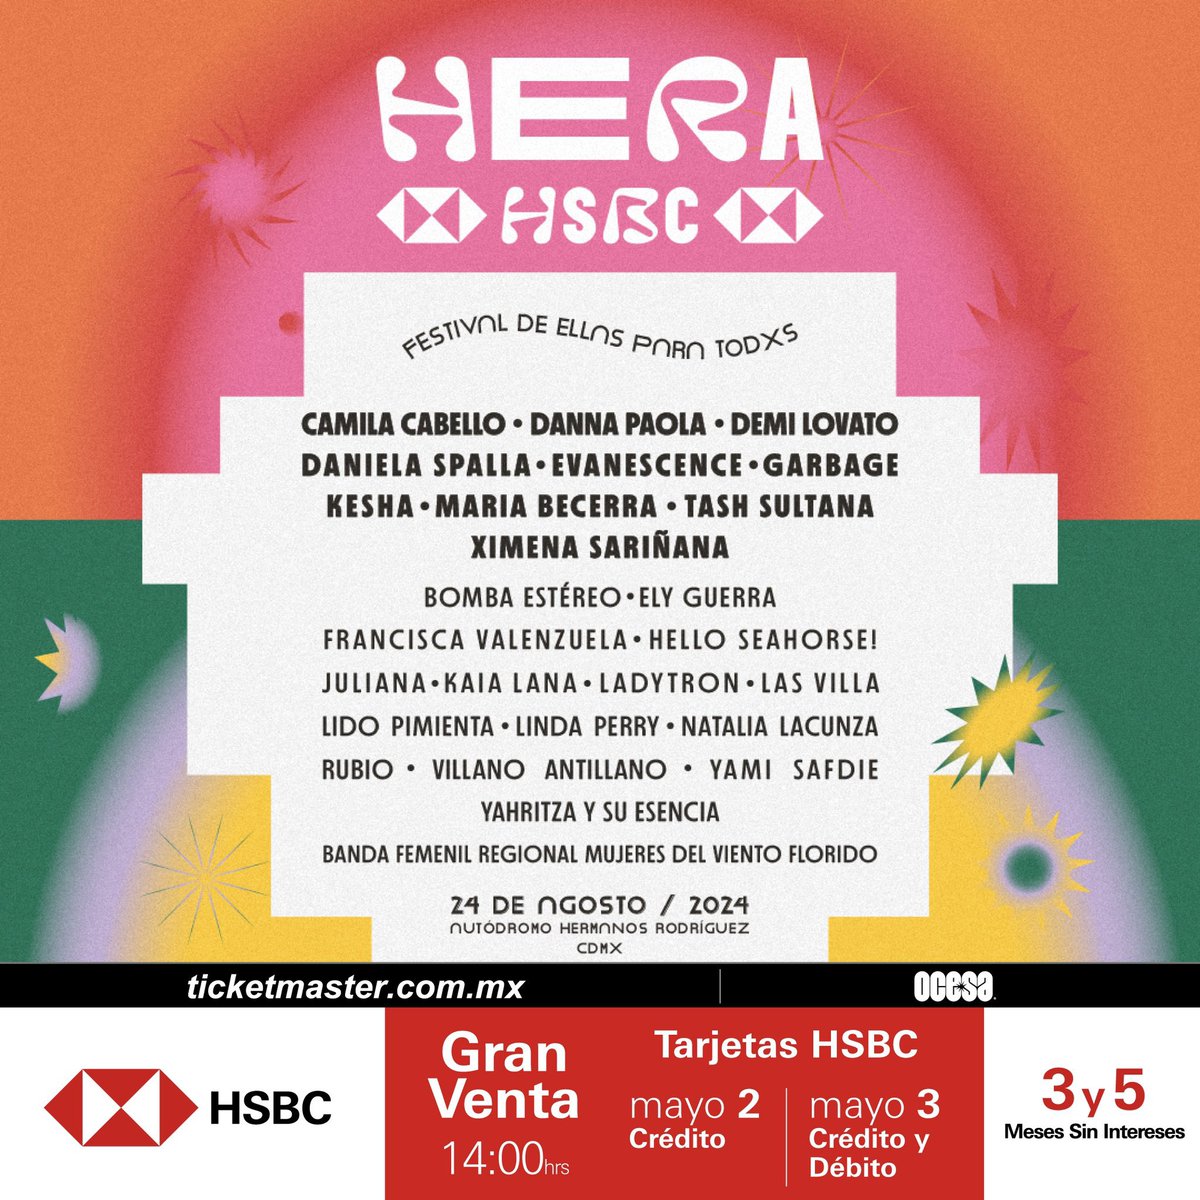 ¡Nace un nuevo festival en la Ciudad de México únicamente por mujeres, HERA HSBC un festival #DeEllasParaTodxs!

¿Les agrada esta nueva propuesta?

📌 Autódromo Hermanos Rodríguez
🗓️ Sábado 24 de agosto 2024
🎟️ #GranVentaHSBC: 2 y 3 de Mayo